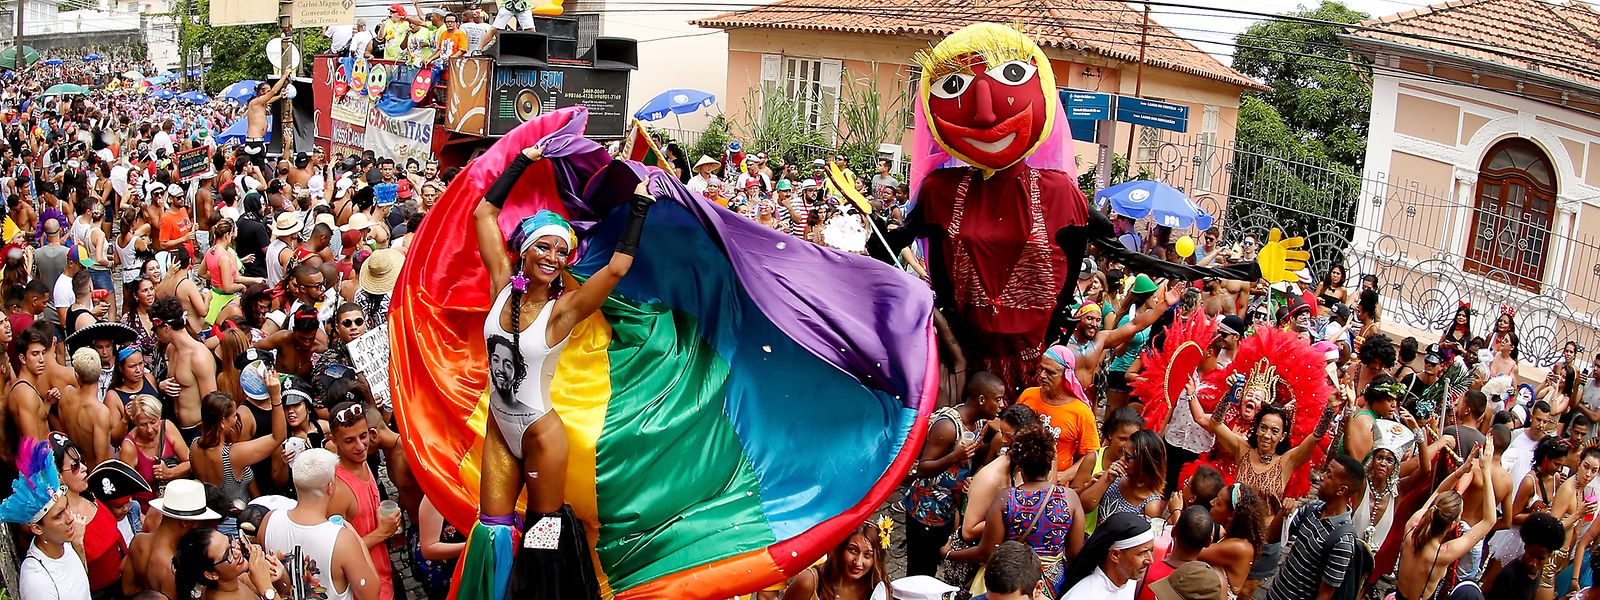 Si le variant Omicron ne joue pas les trouble-fête, le carnaval de Rio devrait faire son grand retour en février 2022.